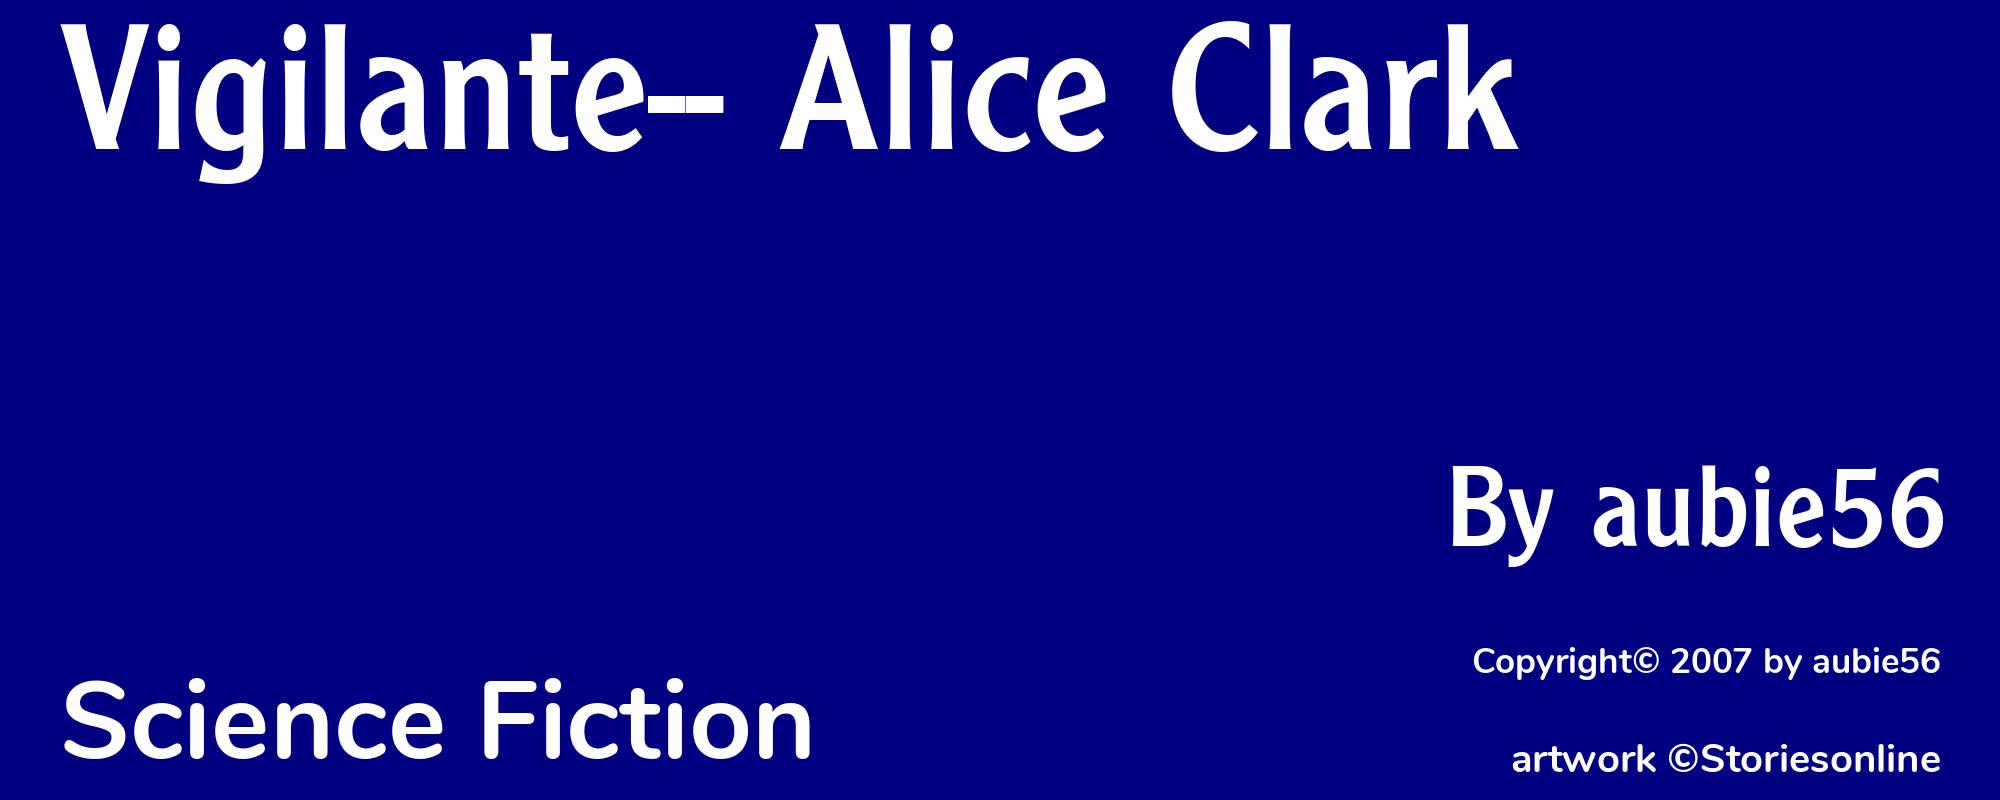 Vigilante-- Alice Clark - Cover